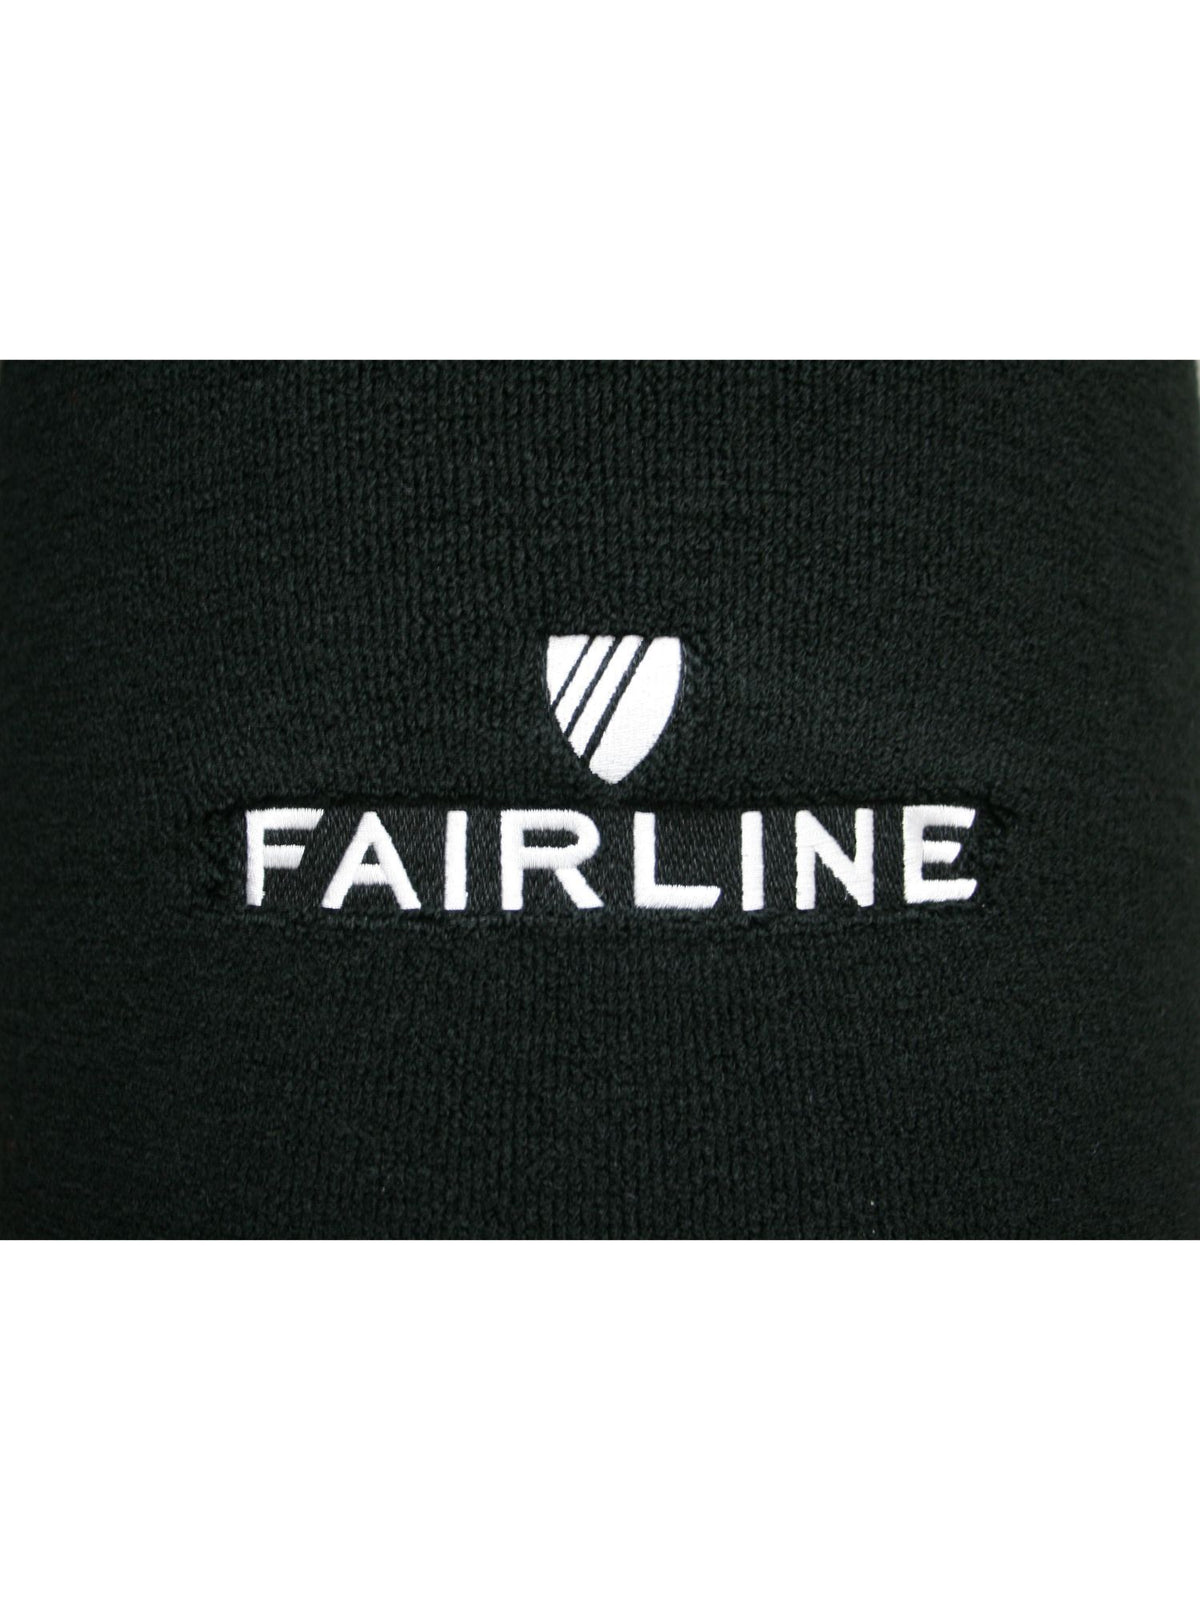 Fairline Fender Cover Logo